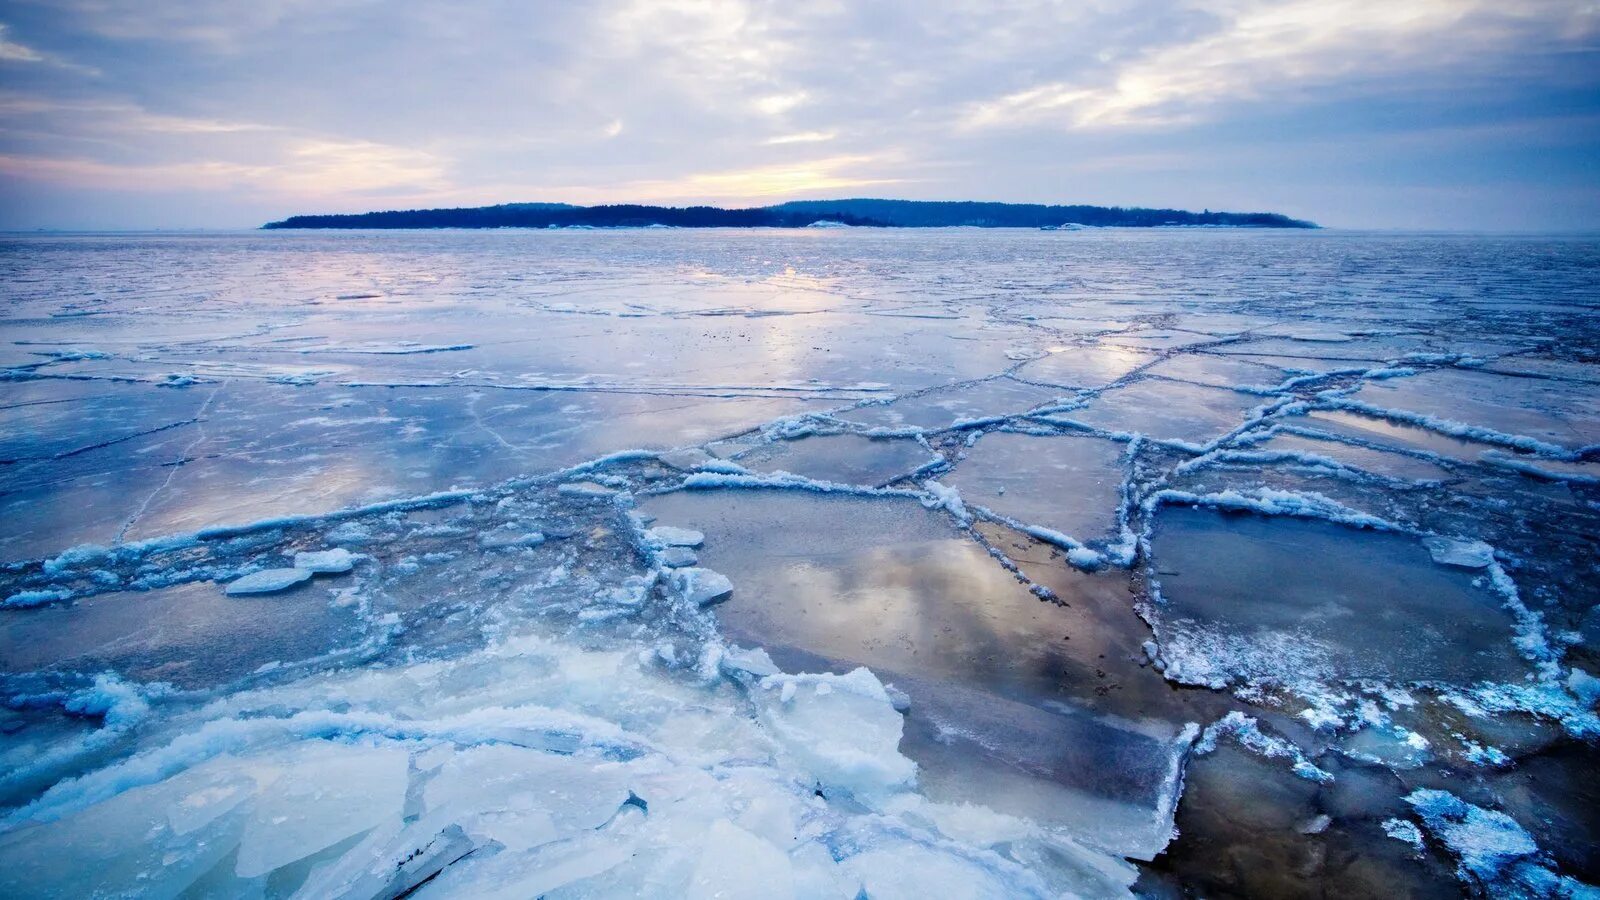 Северный Ледовитый океан Восточно-Сибирское море. Арктика Северный Ледовитый океан. Ледяной Покров Северного Ледовитого океана. Льды Арктики северооедовитого океана. Лед 3 океан